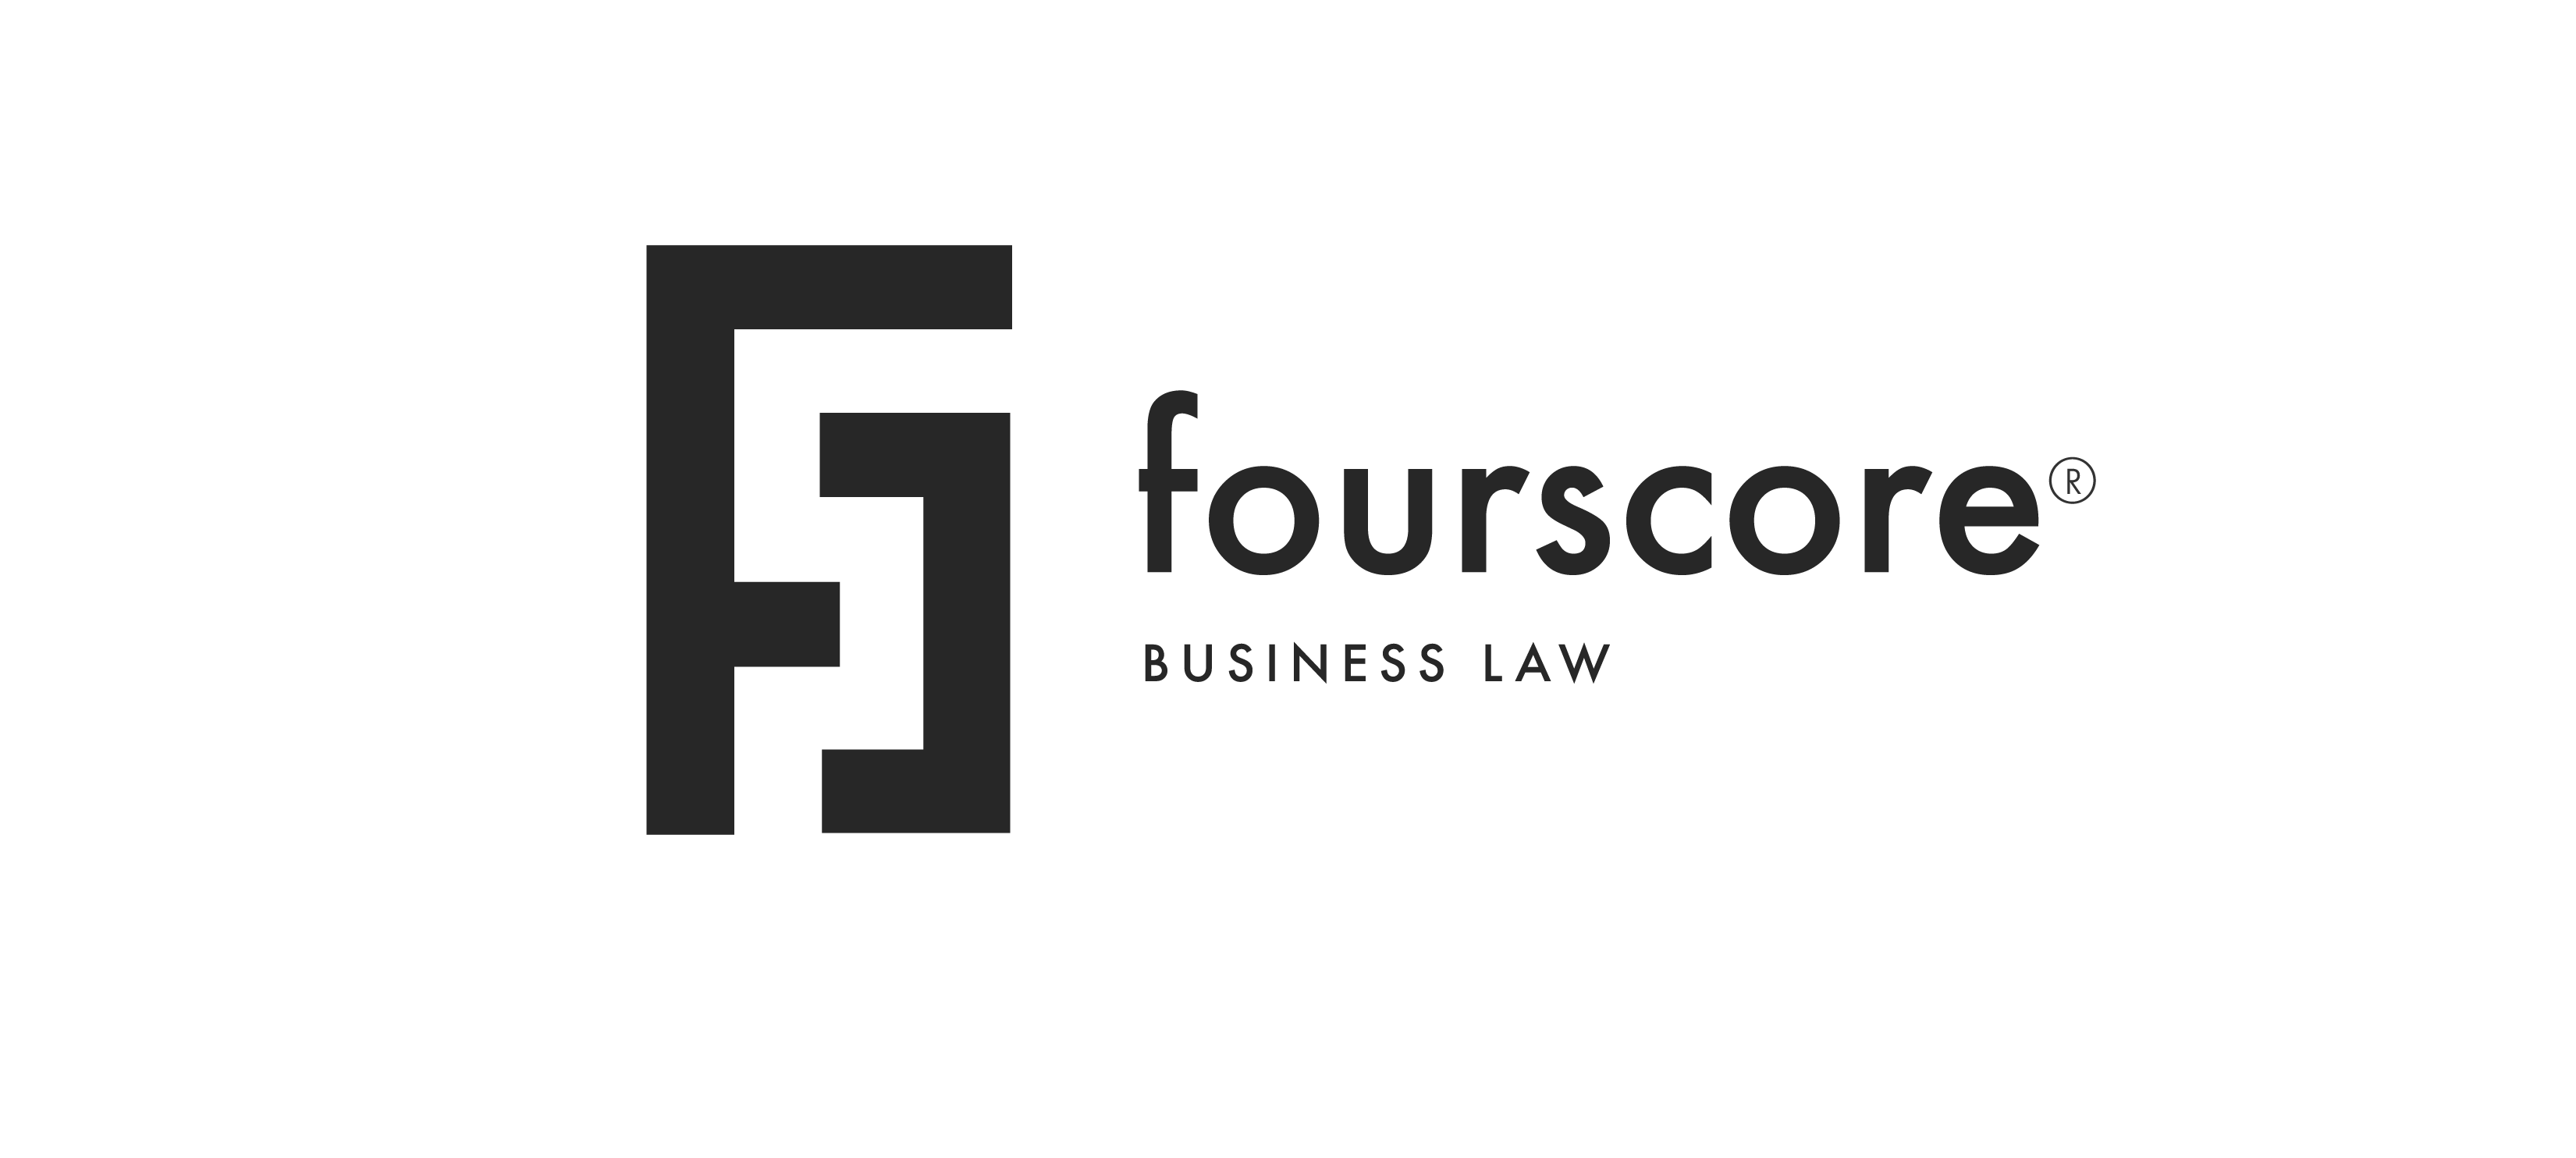 Sponsor Four Score Business Law